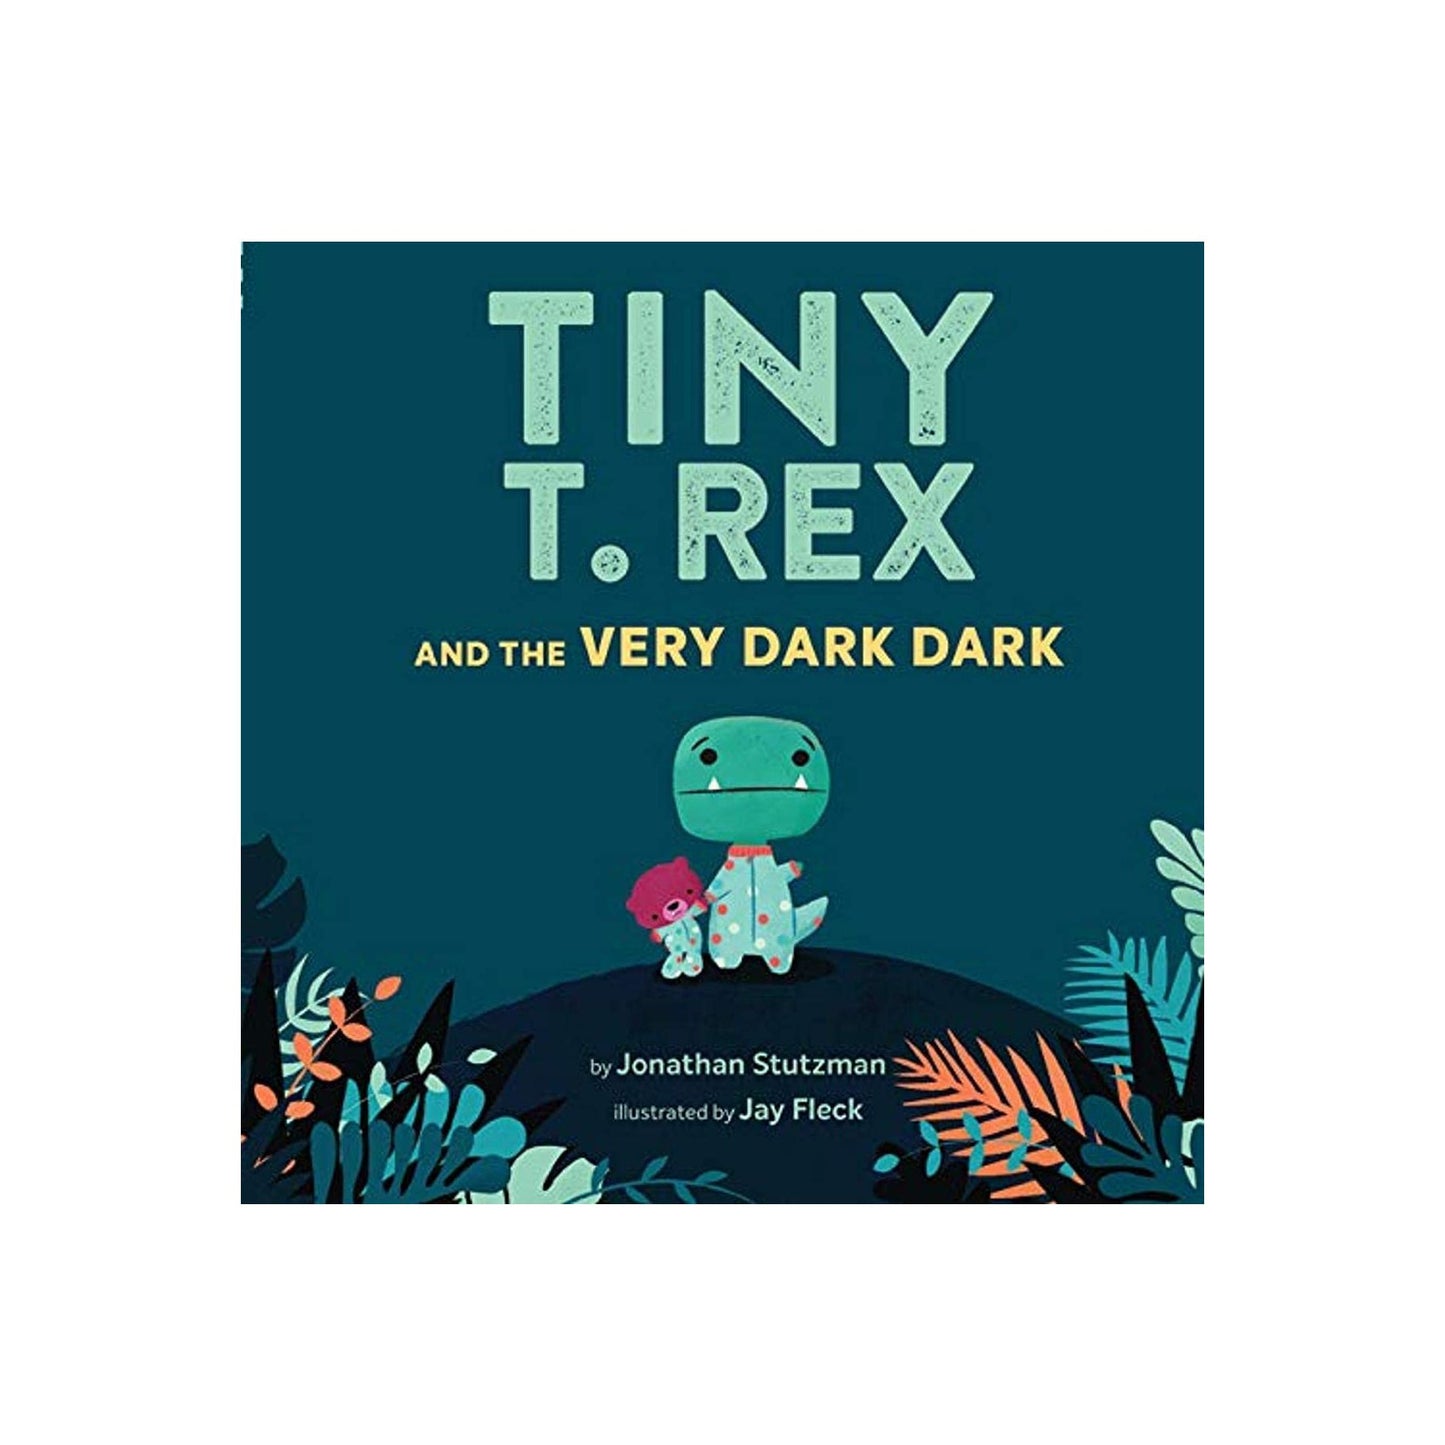 Tiny T. rex and the Very Dark Dark